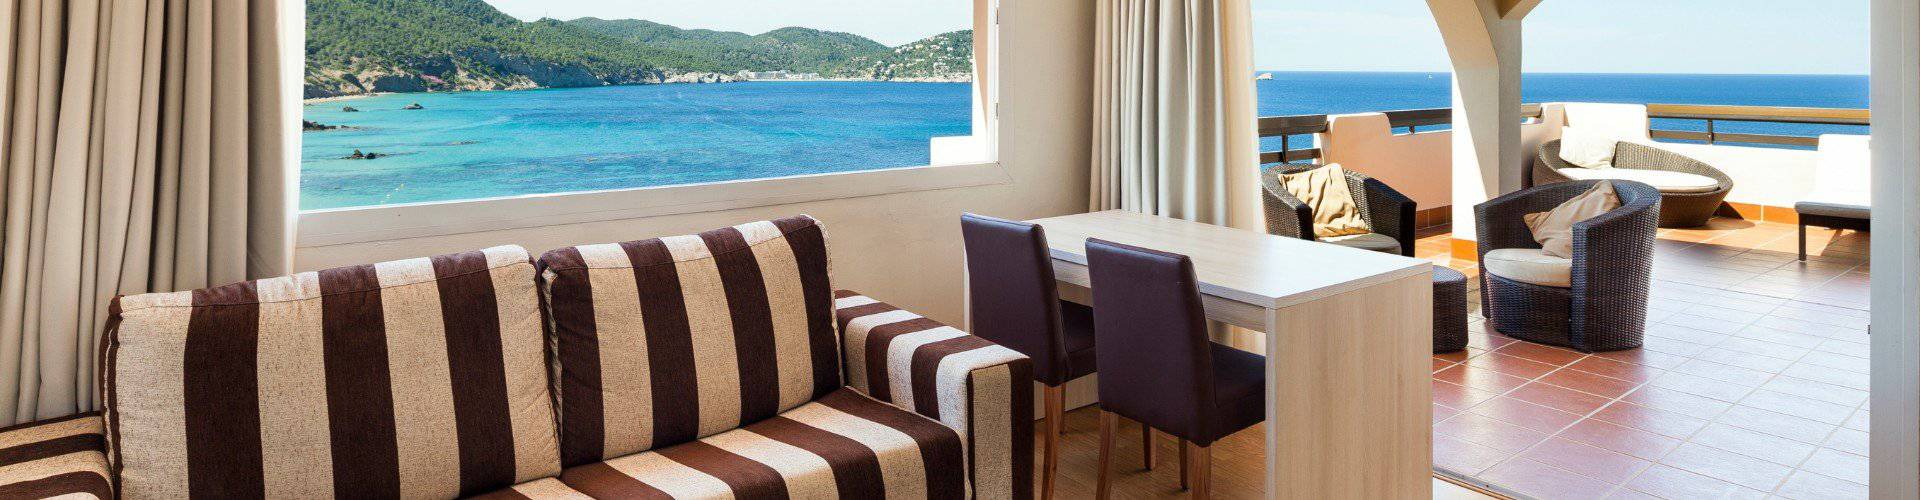 Habitaciones Invisa Hotel Club Cala Verde Playa Es Figueral